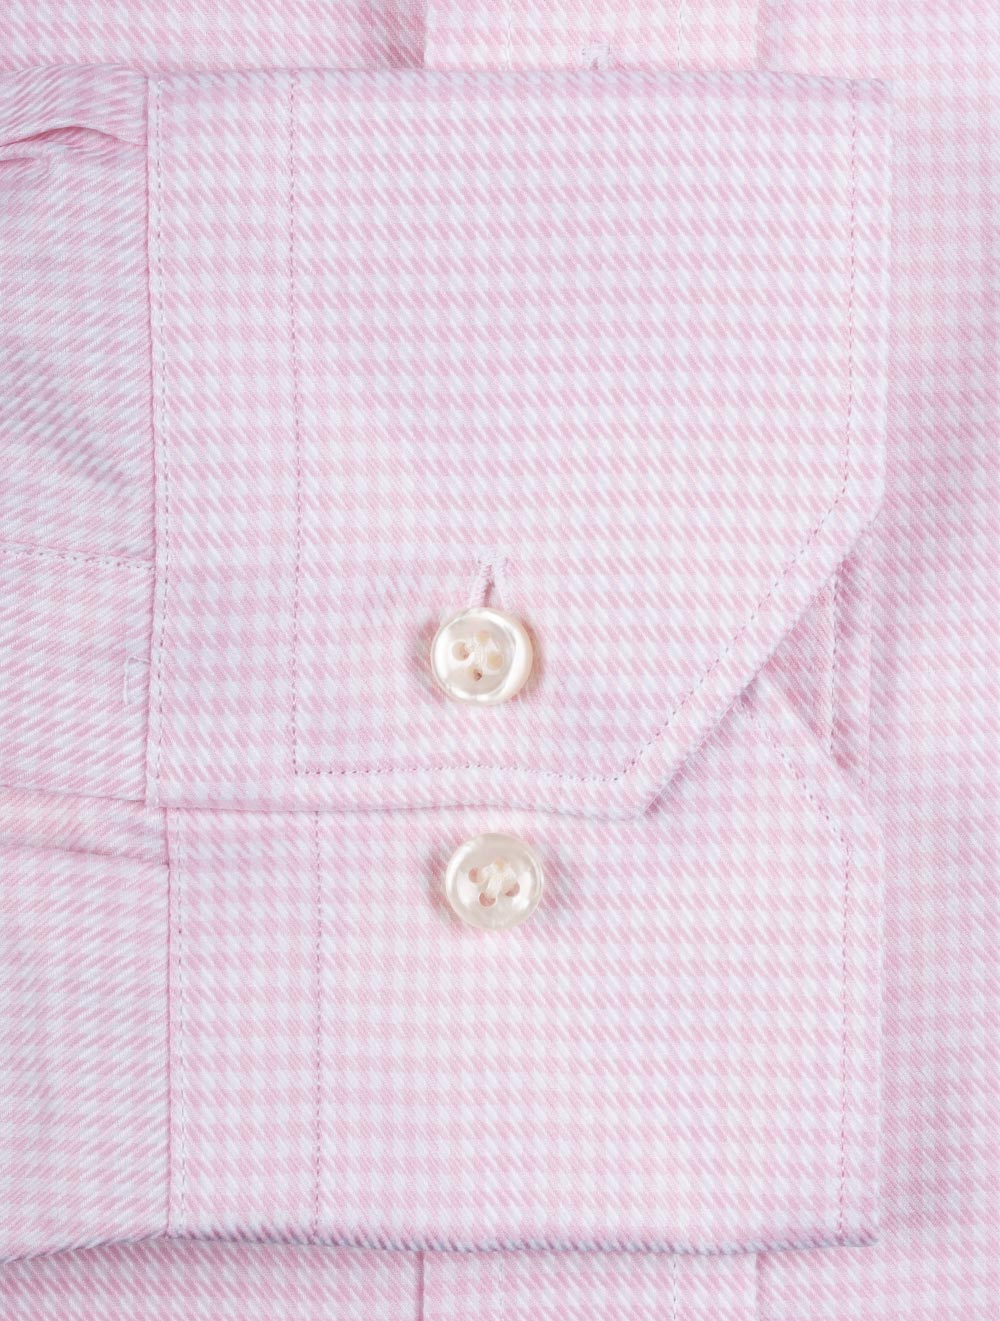 Houndstooth Buttondown Collar Shirt Pink